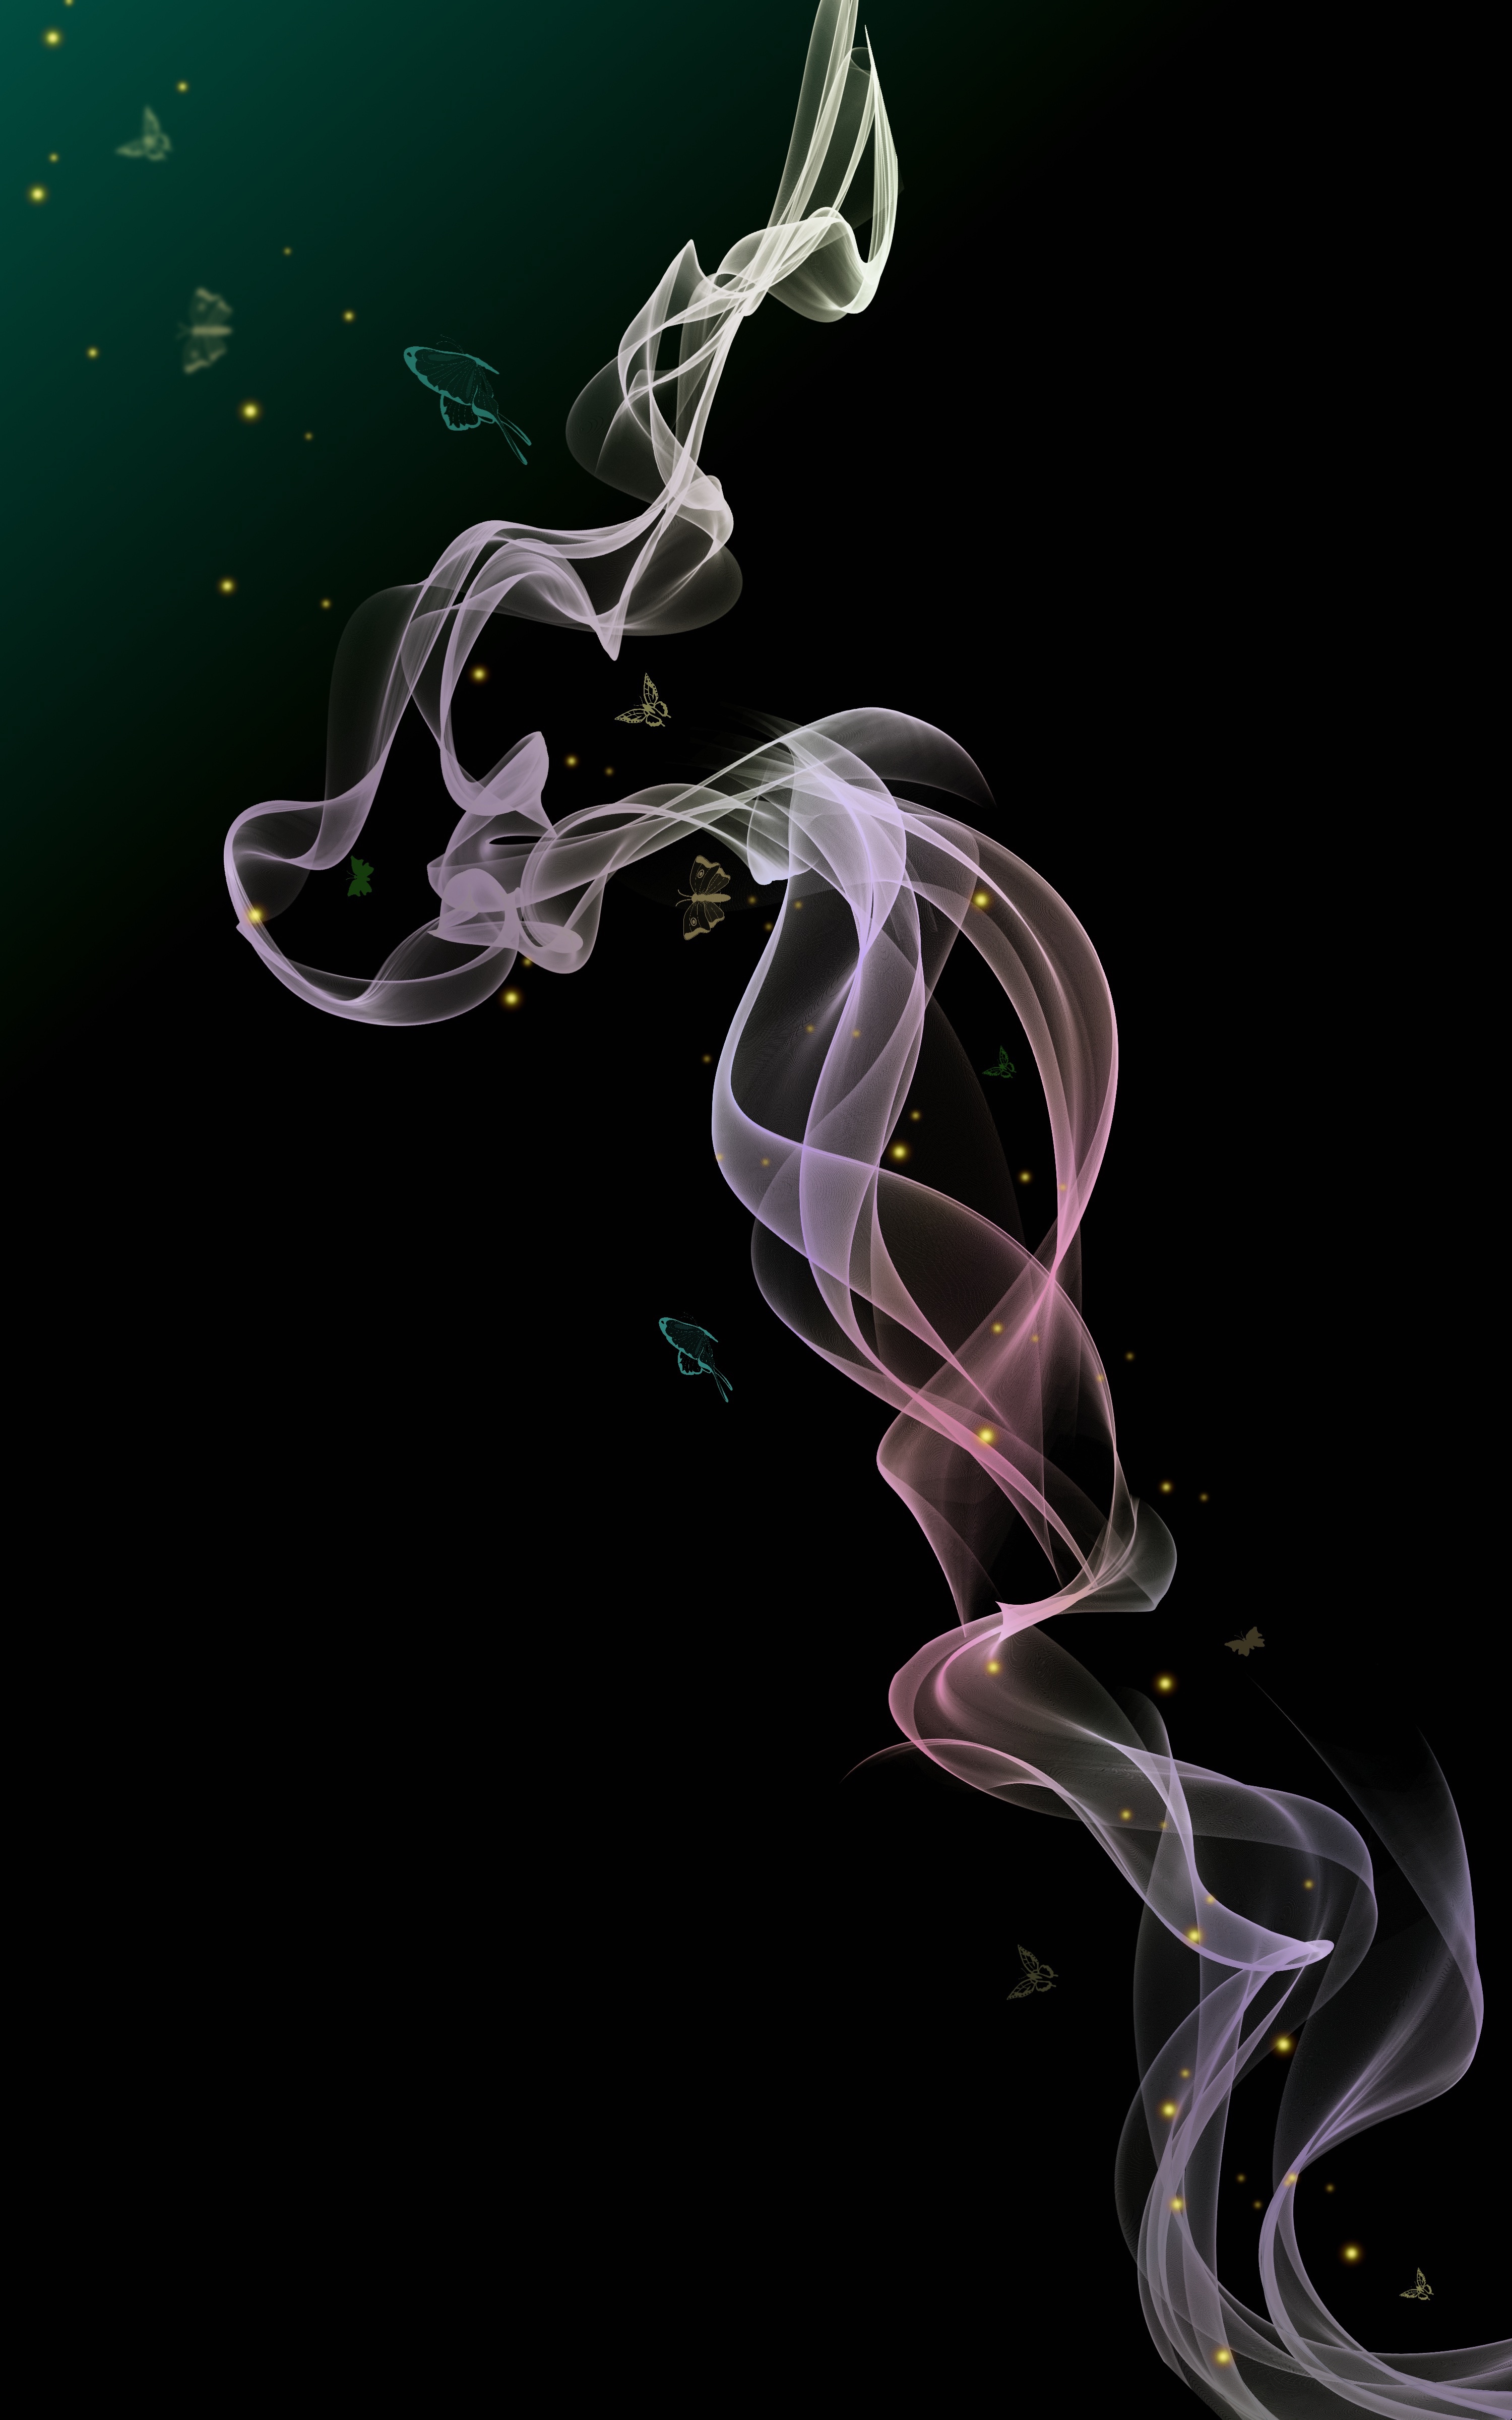 Ultra HD 4K wavy, abstract, smoke